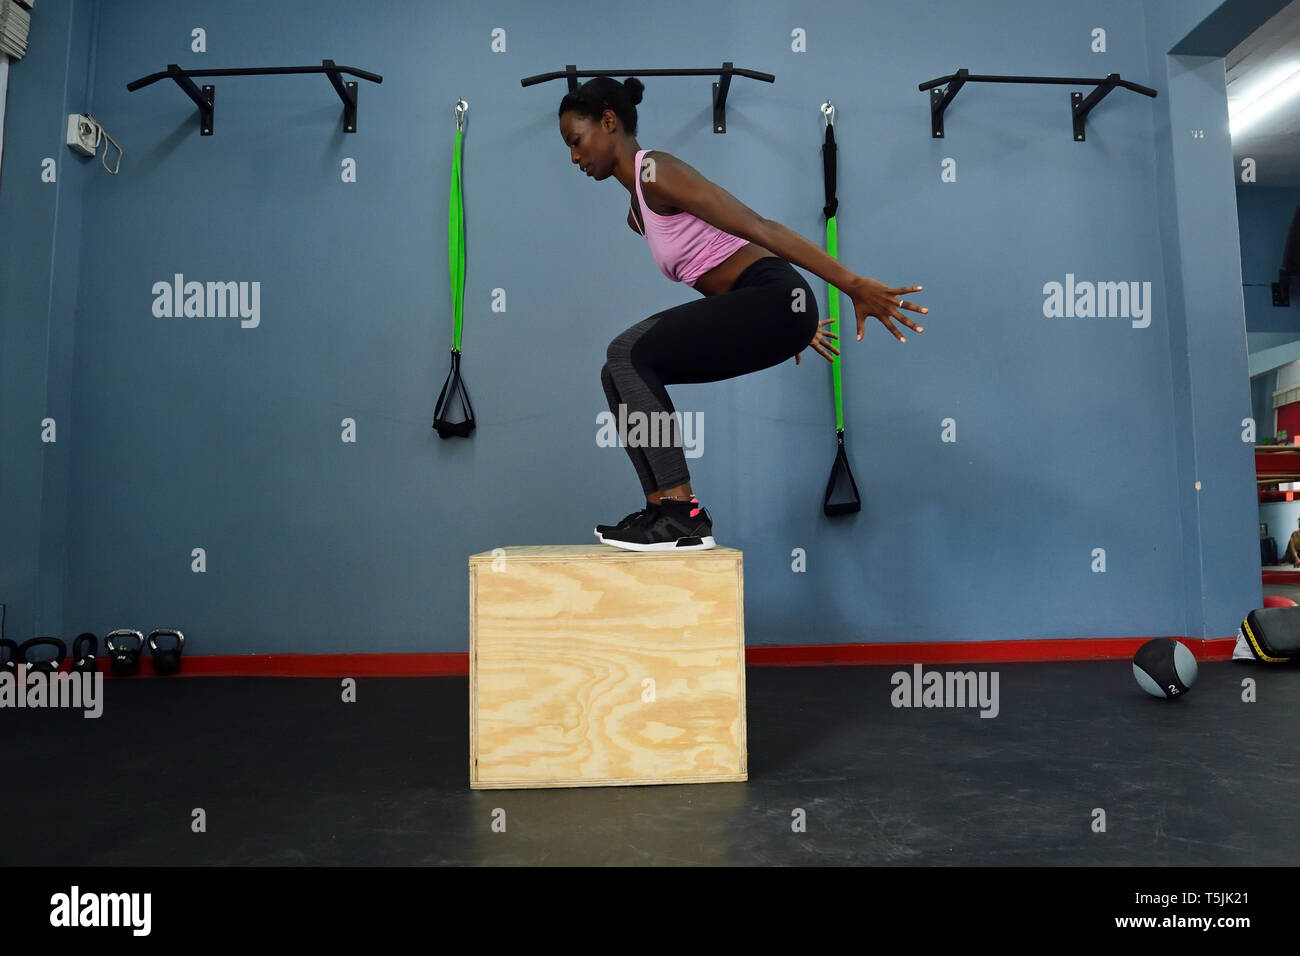 Mujer practicando en un gimnasio haciendo un cuadro saltar Foto de stock